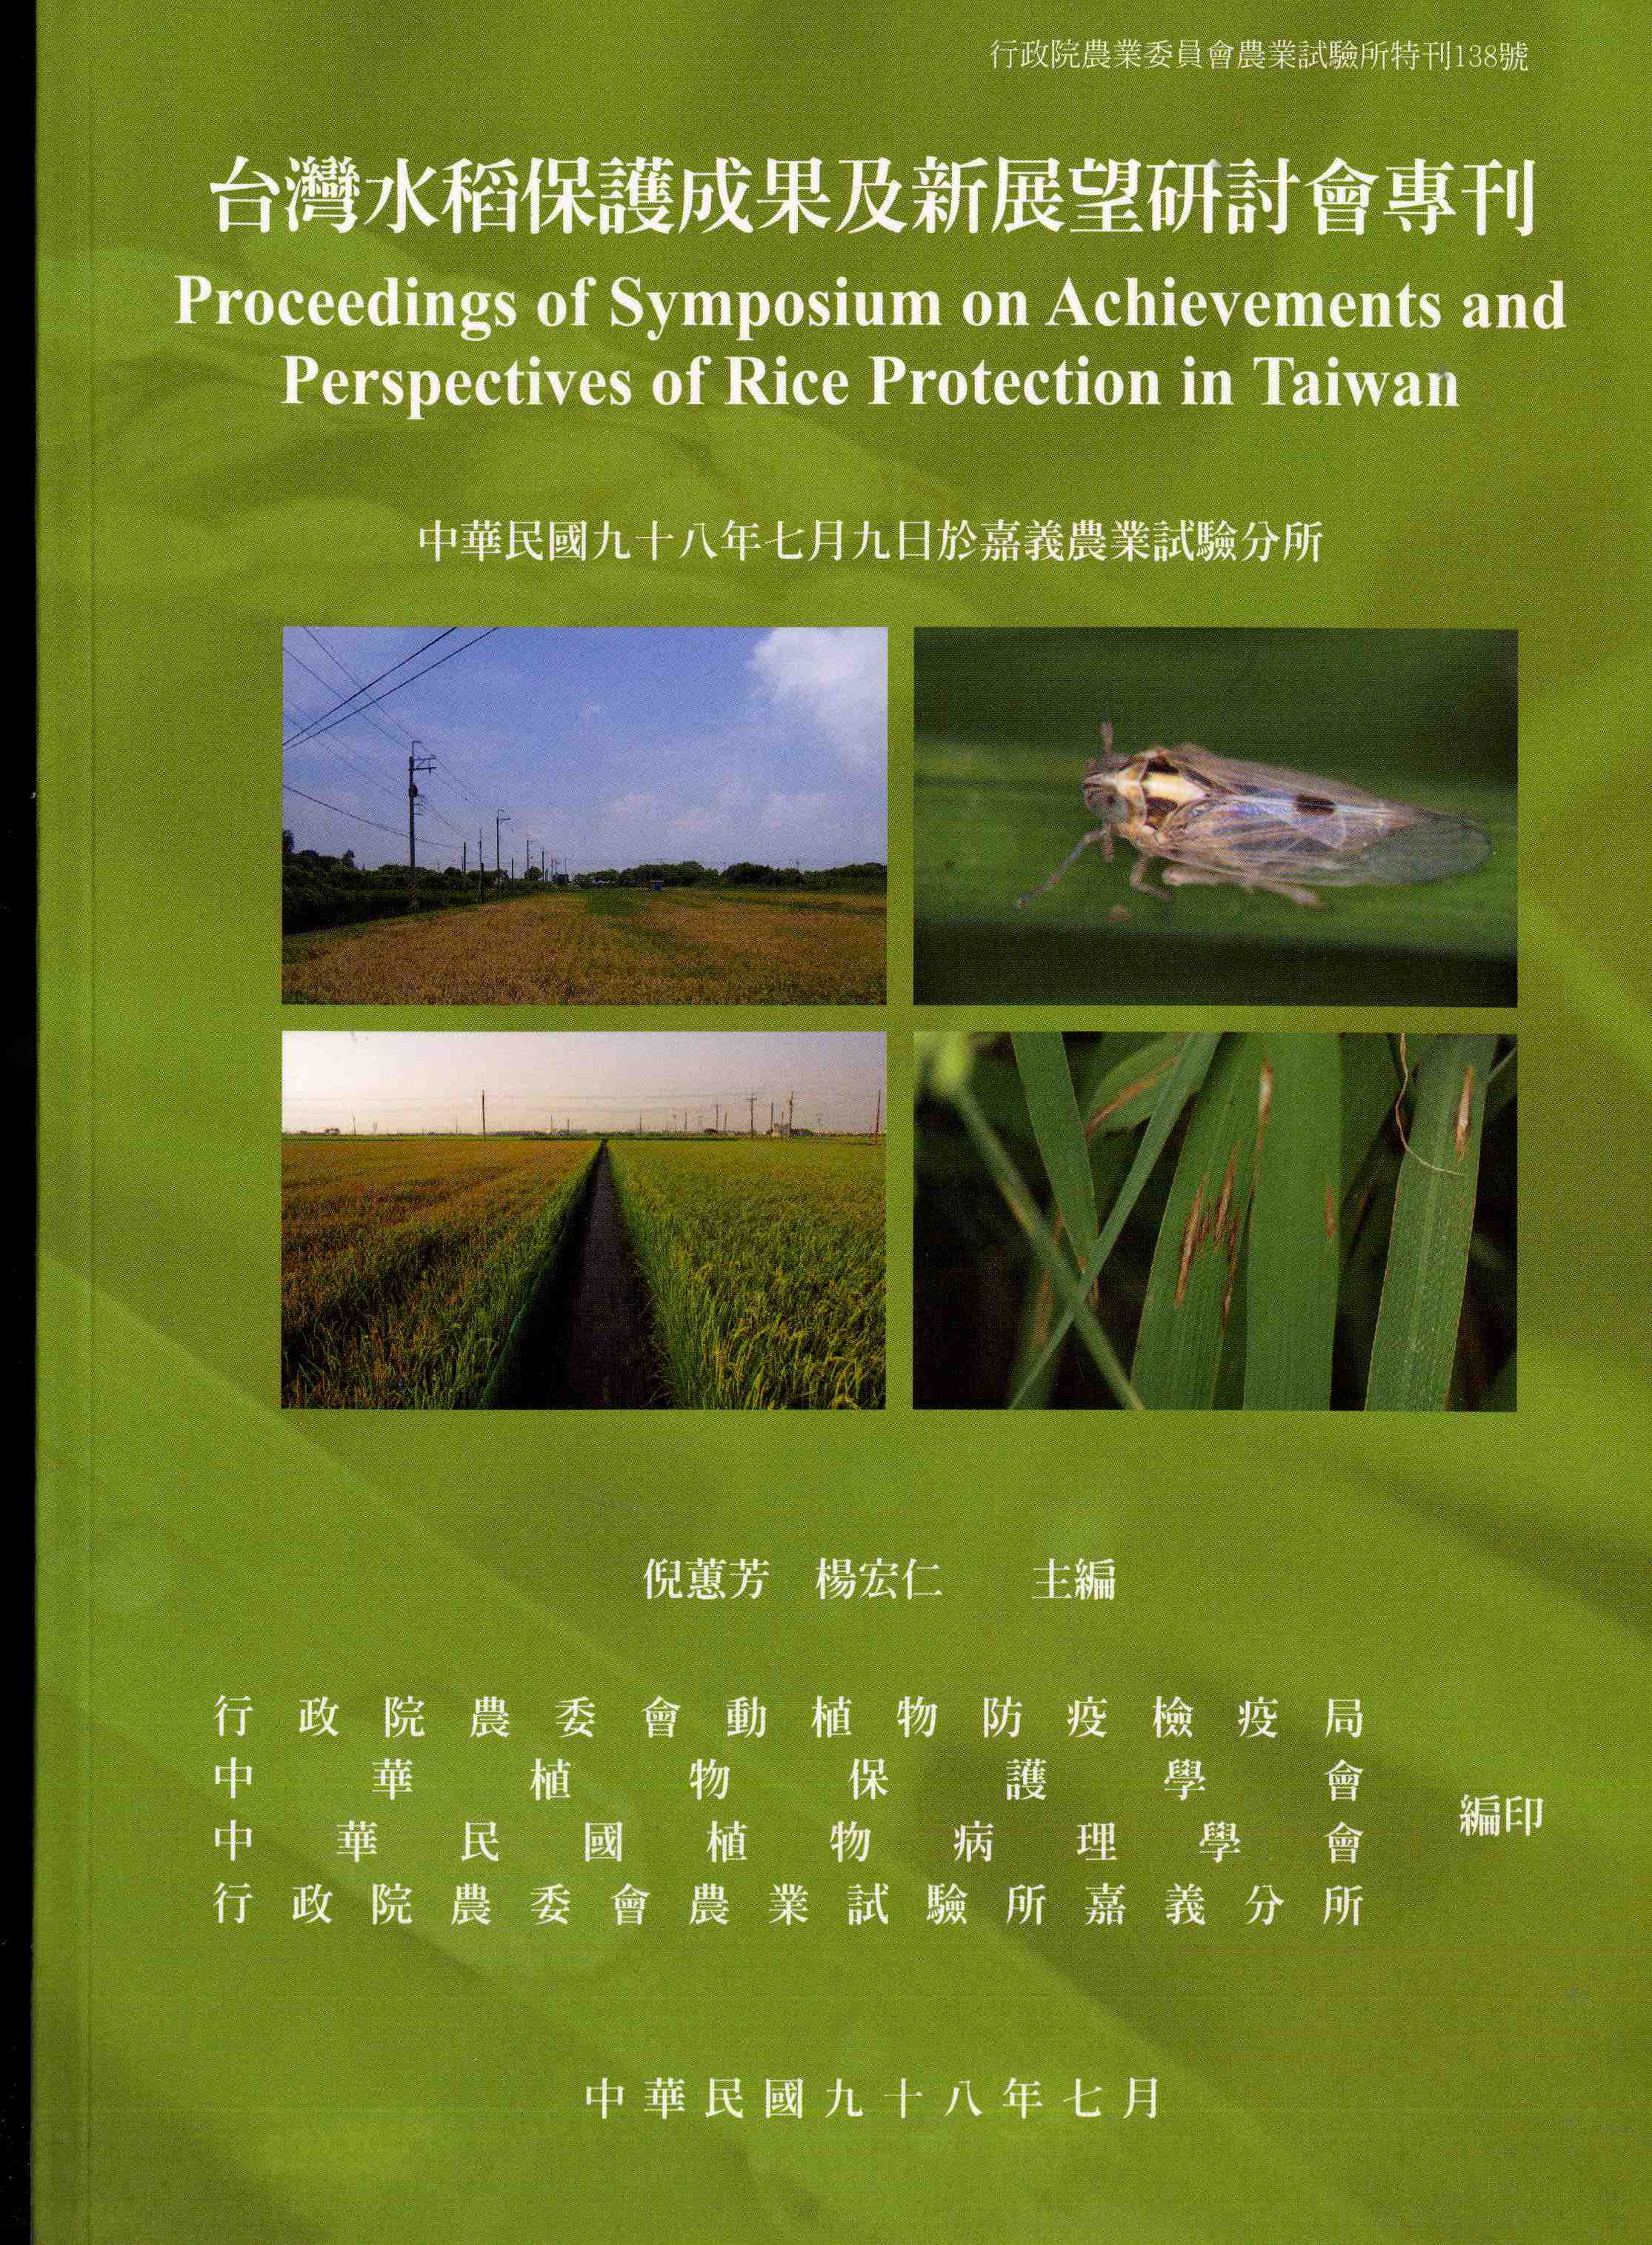 臺灣水稻保護成果及新展望研討會專刊